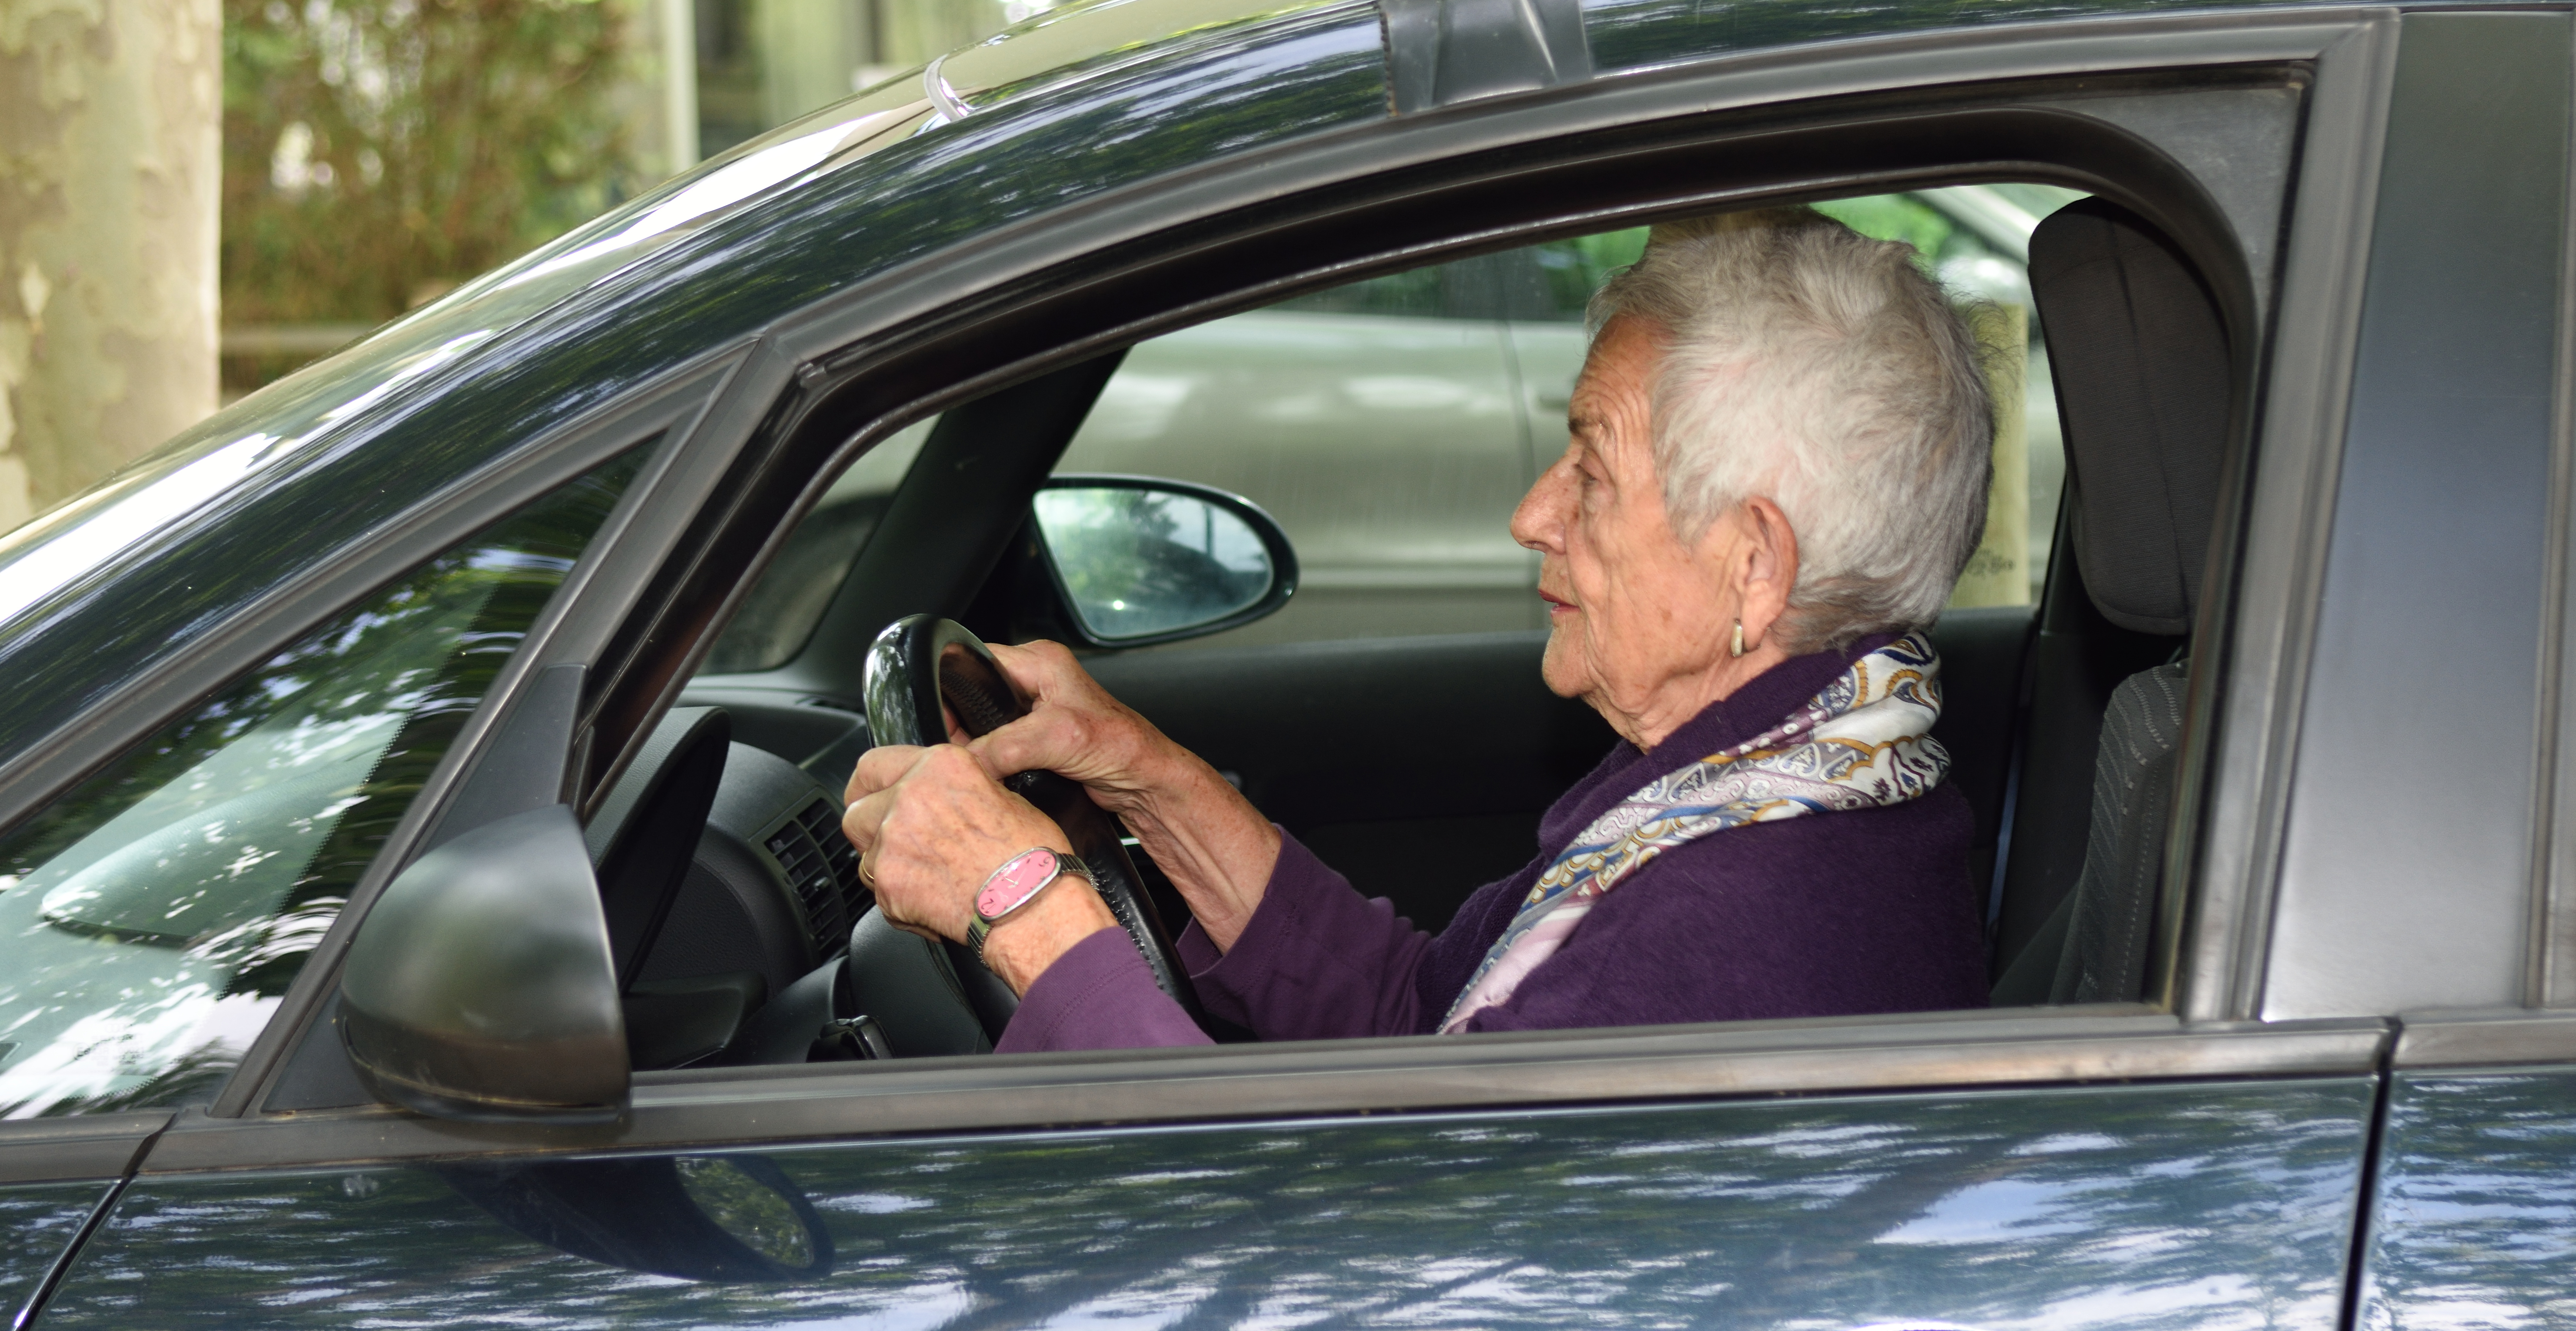 A senior woman driving a car | Source: Shutterstock